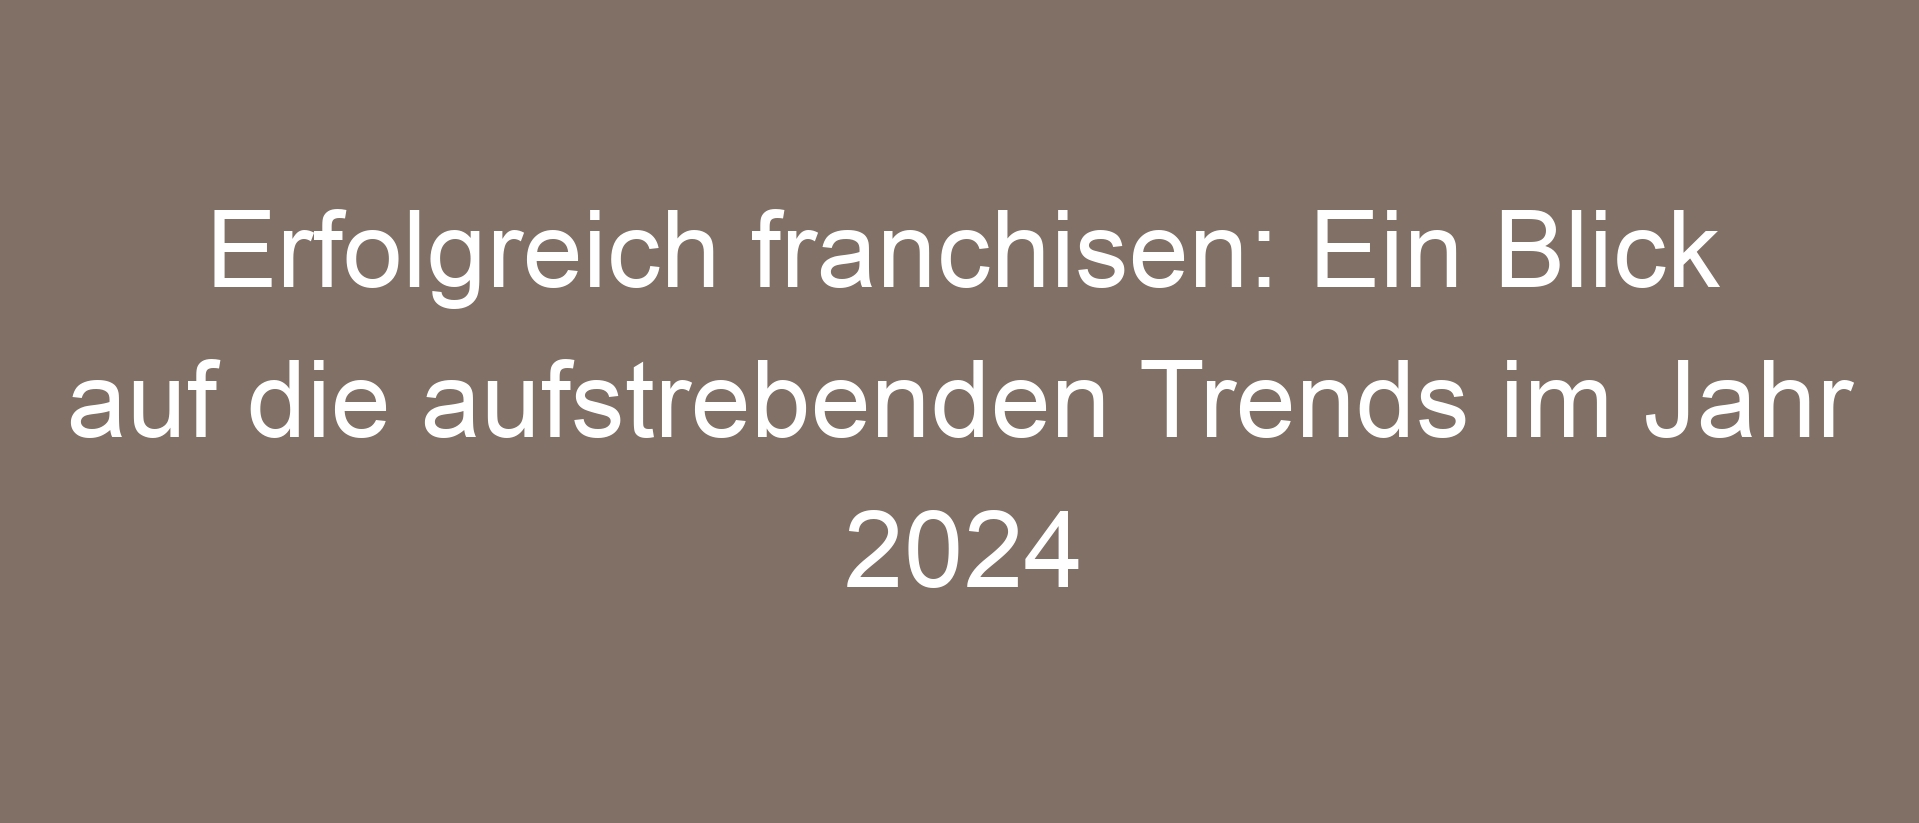 Erfolgreich franchisen: Ein Blick auf die aufstrebenden Trends im Jahr 2024